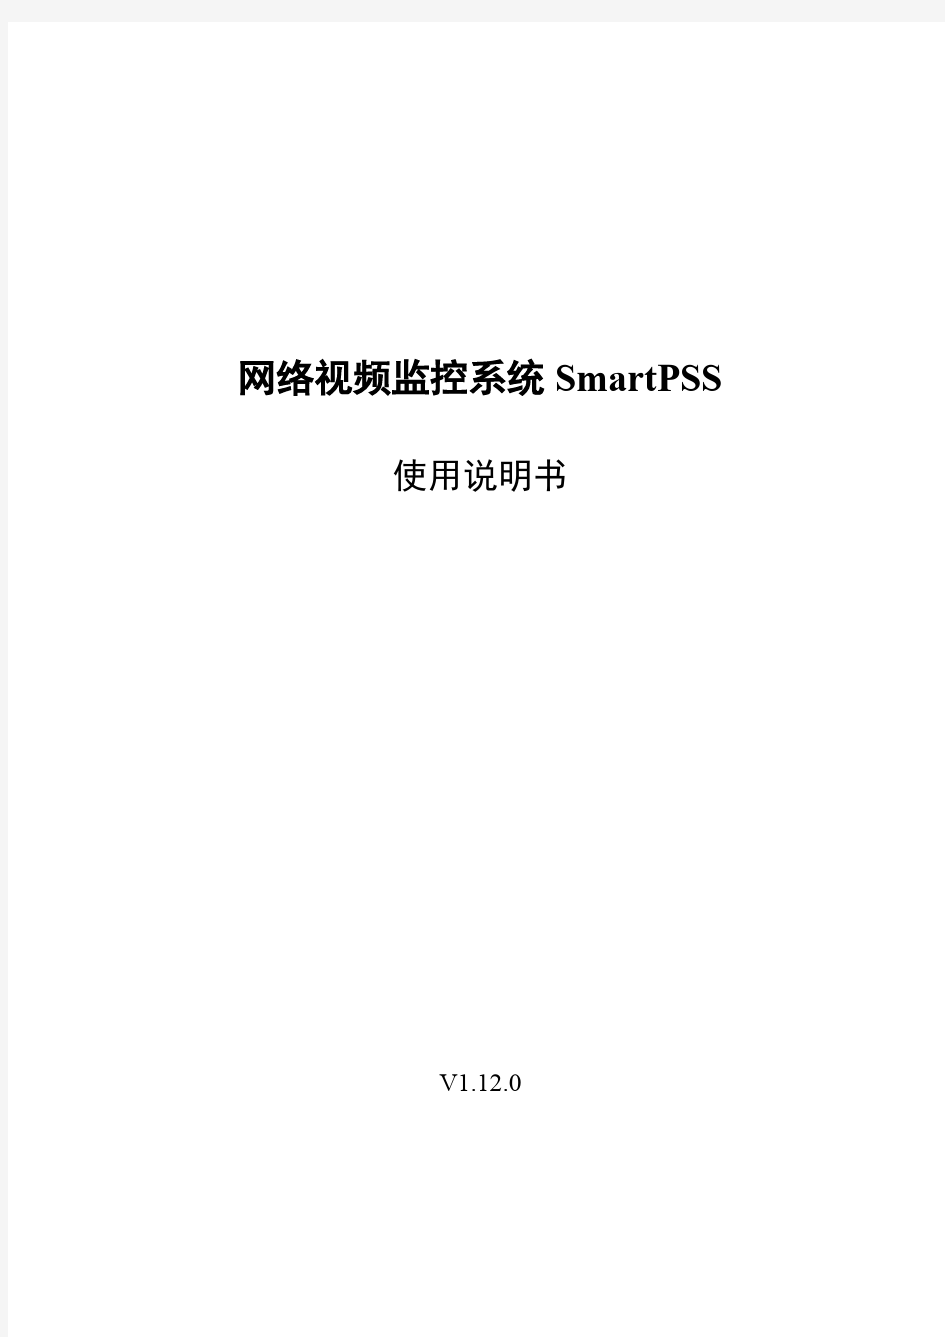 网络视频监控系统Smart PSS使用说明书_V1.12